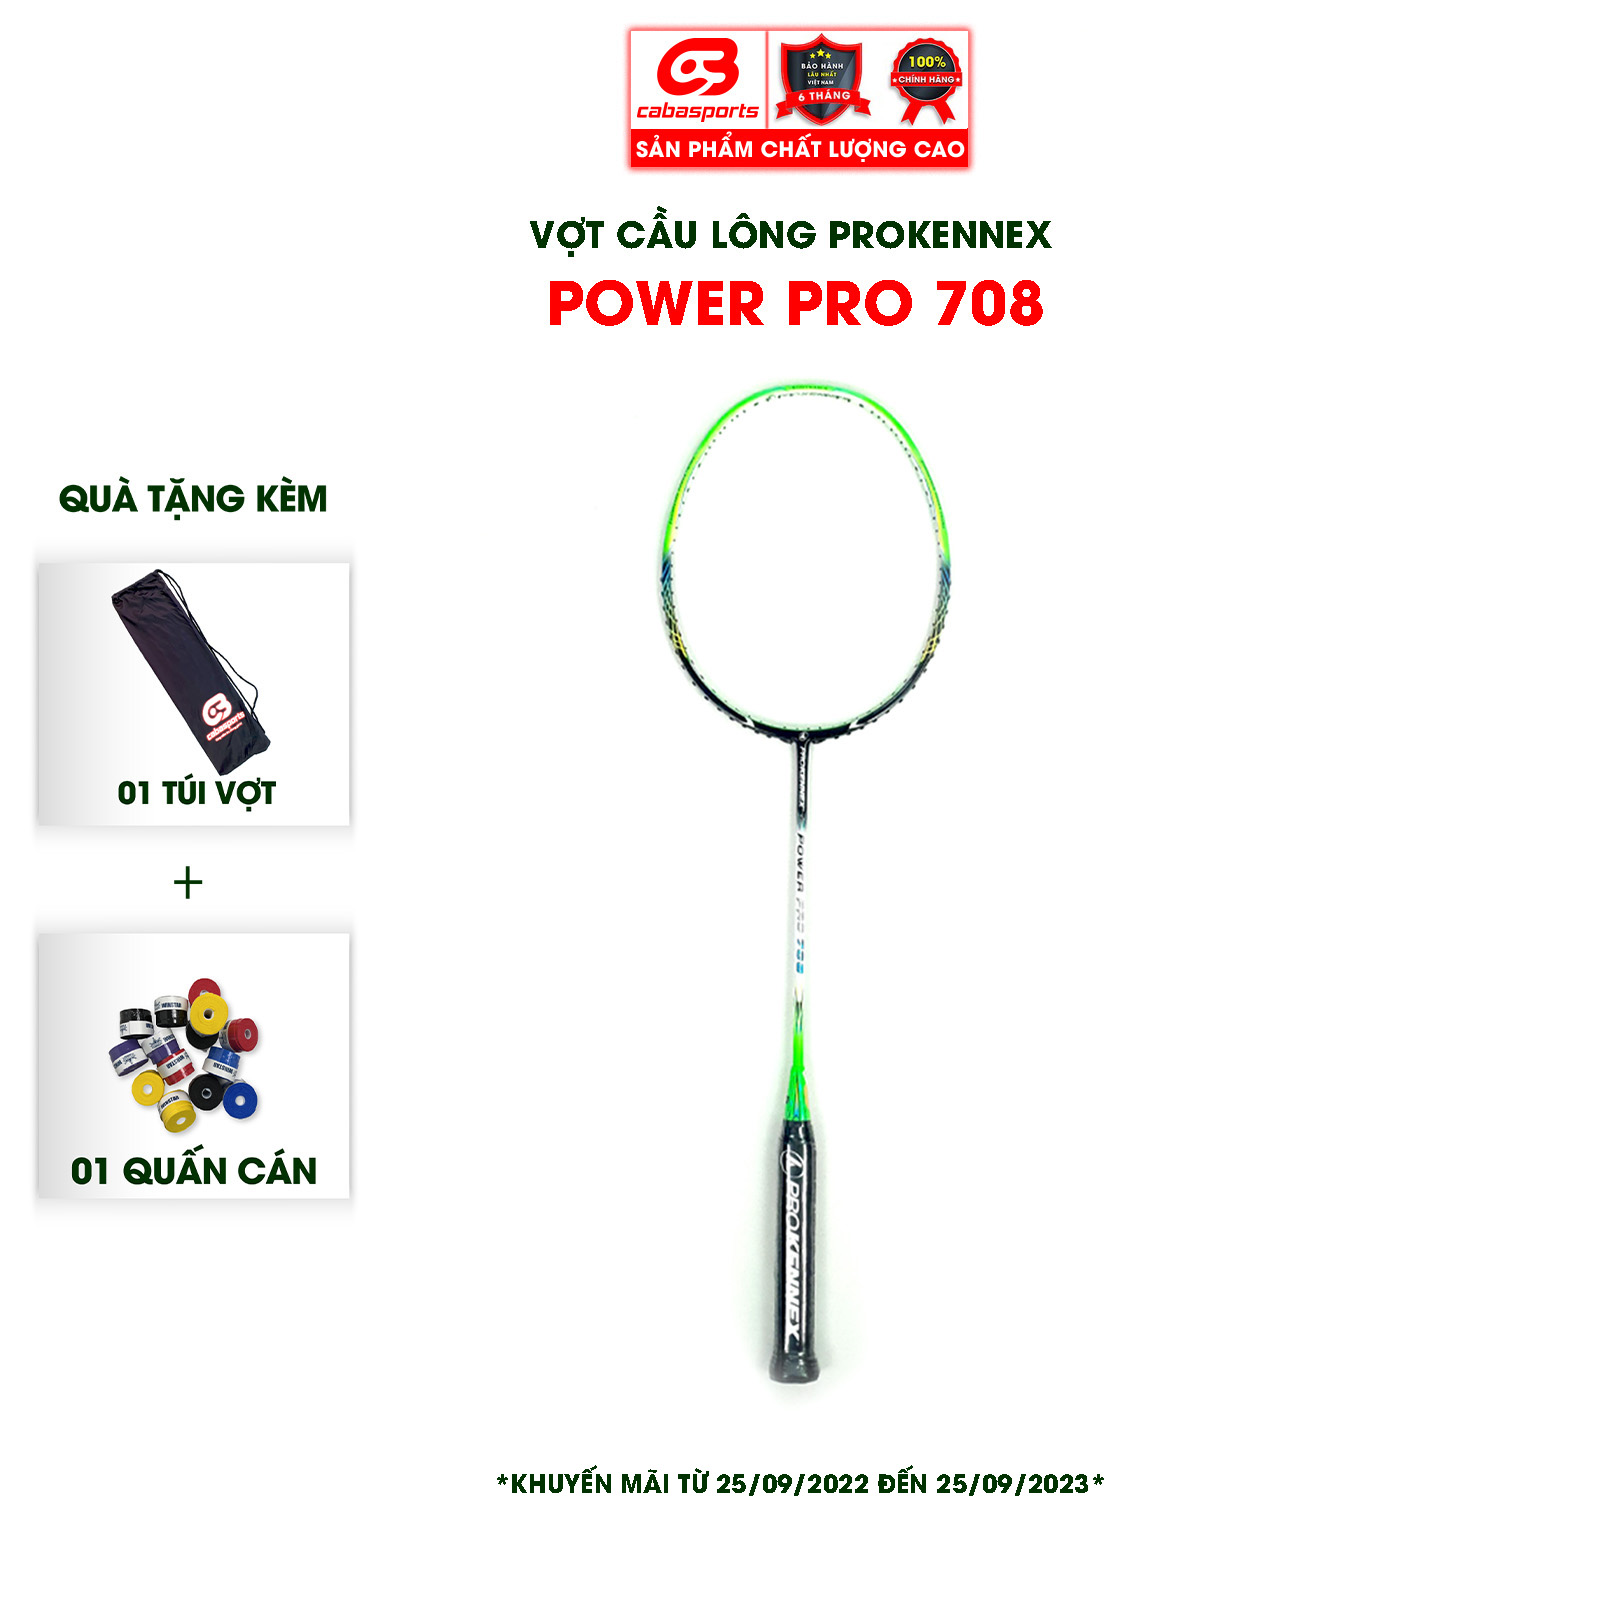 Vợt cầu lông ProKennex Power Pro 708 (1 cây) - ĐÃ CĂNG LƯỚI